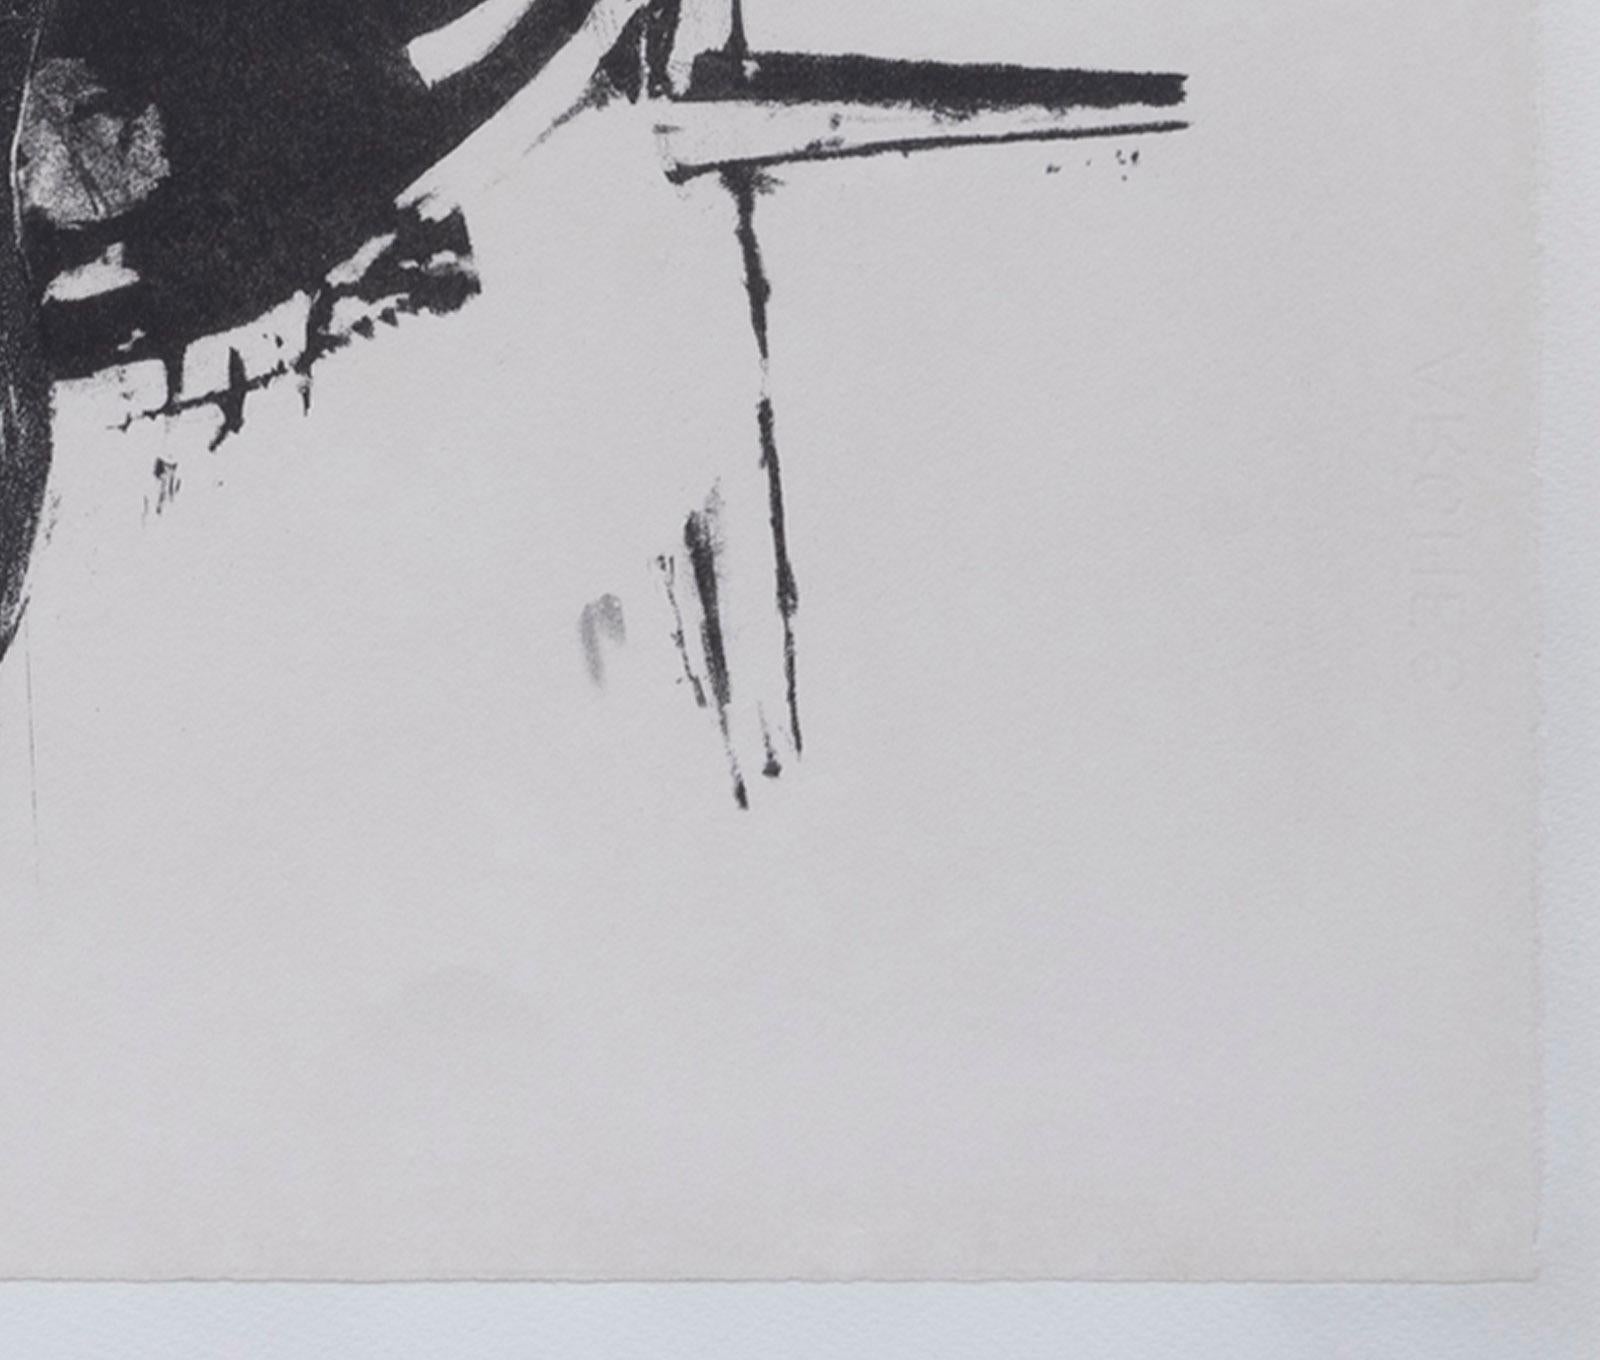 Mädchen'.
Von Reginald Butler

Medium - Lithographie
Unterzeichnet - Ja
Ausgabe - AP
Größe - 650mm x 490mm
Datum - 1968

Die Farbe des Drucks kann bei Betrachtung auf einem Monitor abweichen.

Reginald Cotterell Butler 1913-1981

Bildhauer, geboren